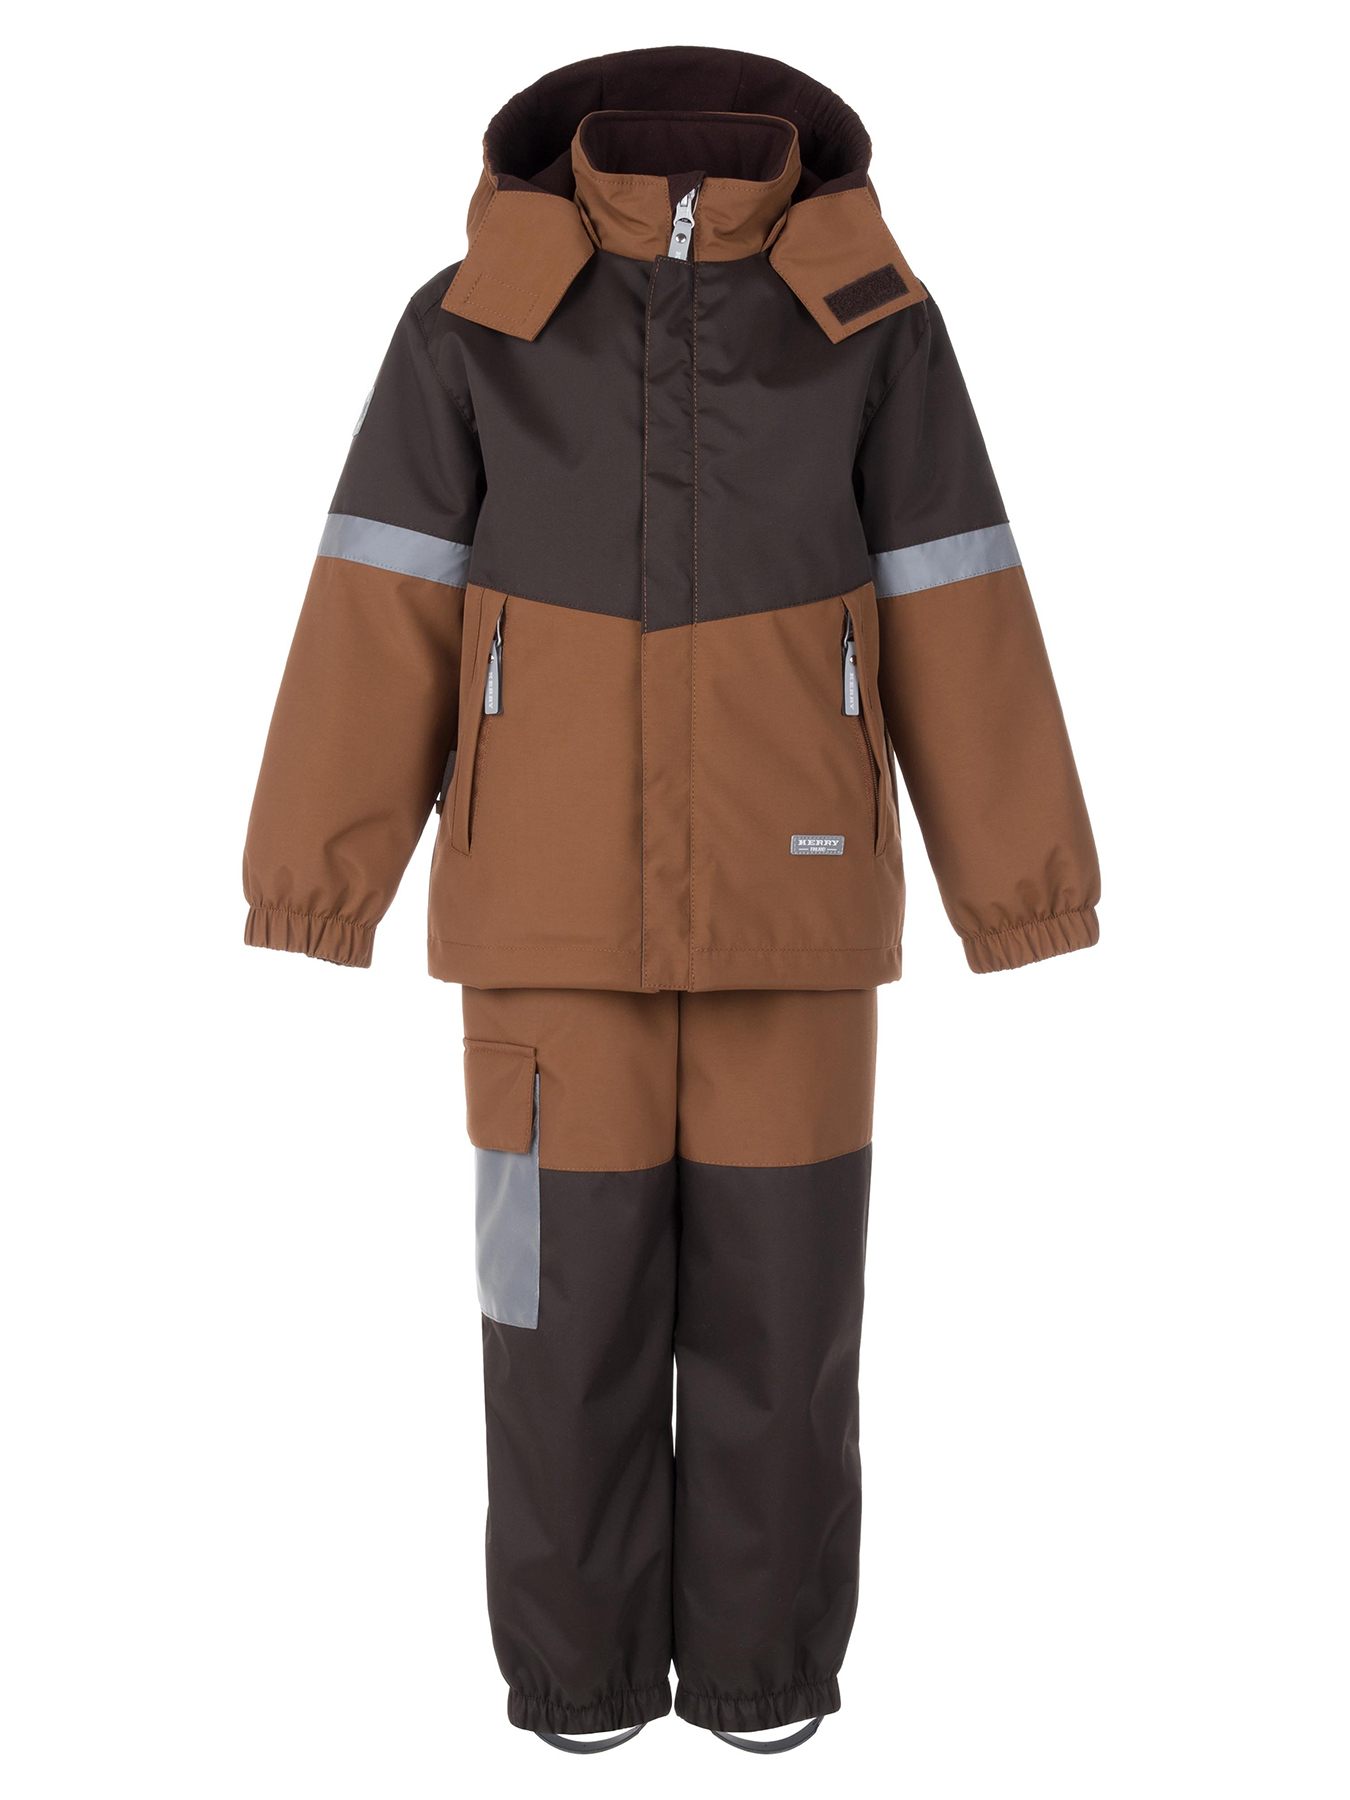 Комплект верхней одежды KERRY DRAKE K24036, 801-коричневый,темно-коричневый, 122